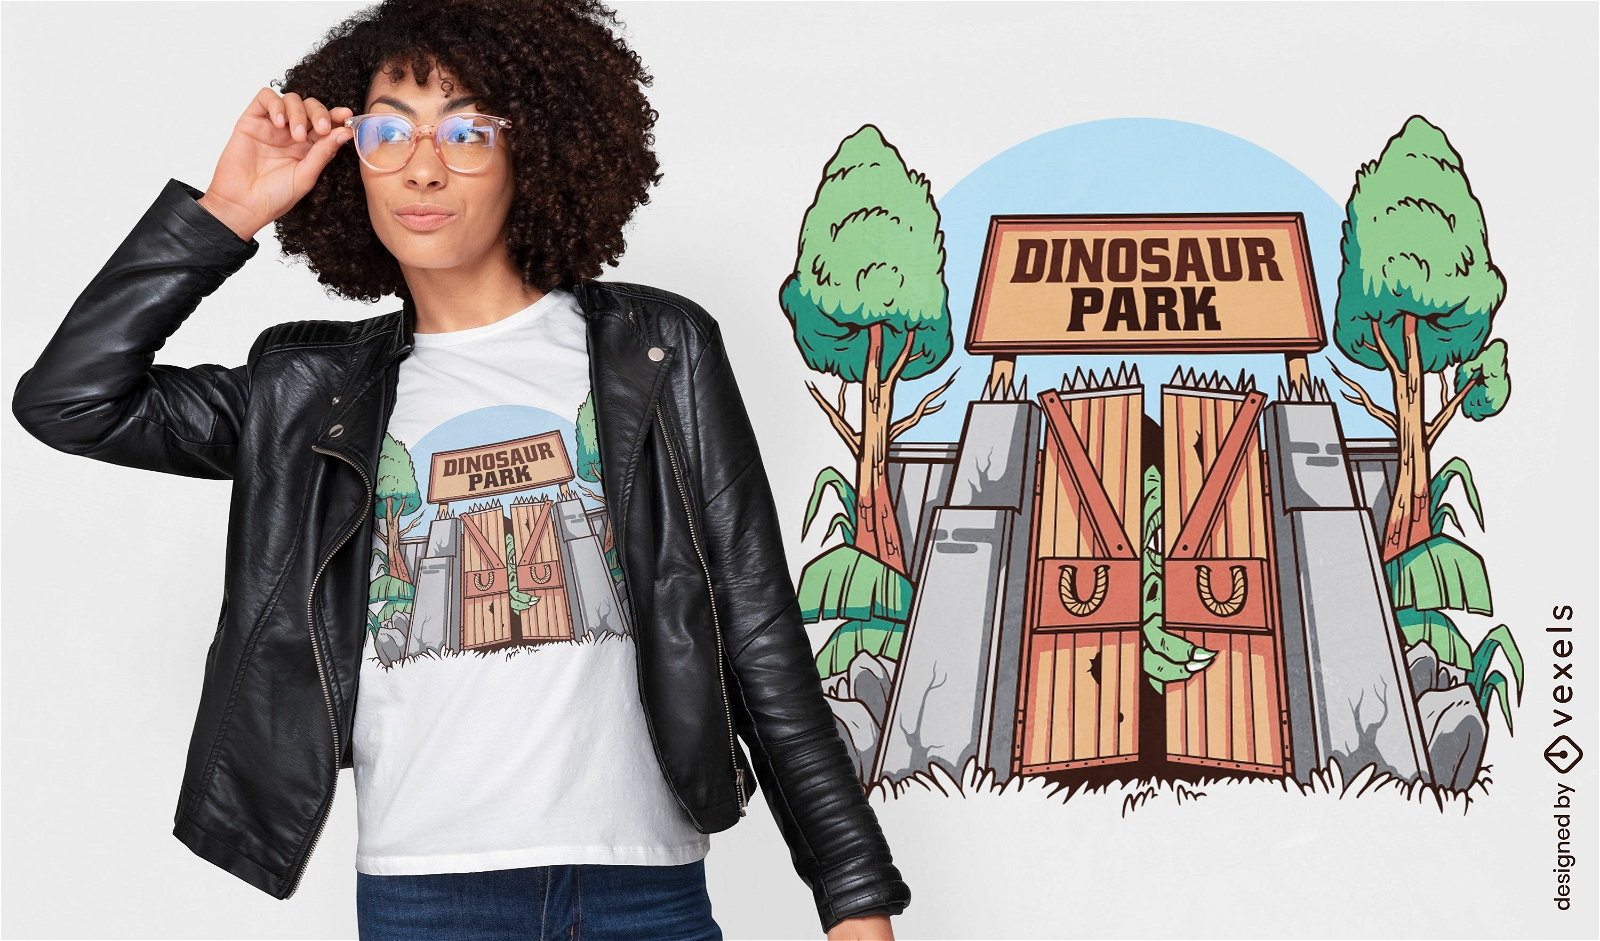 Dise?o de camiseta de la puerta del parque de dinosaurios.